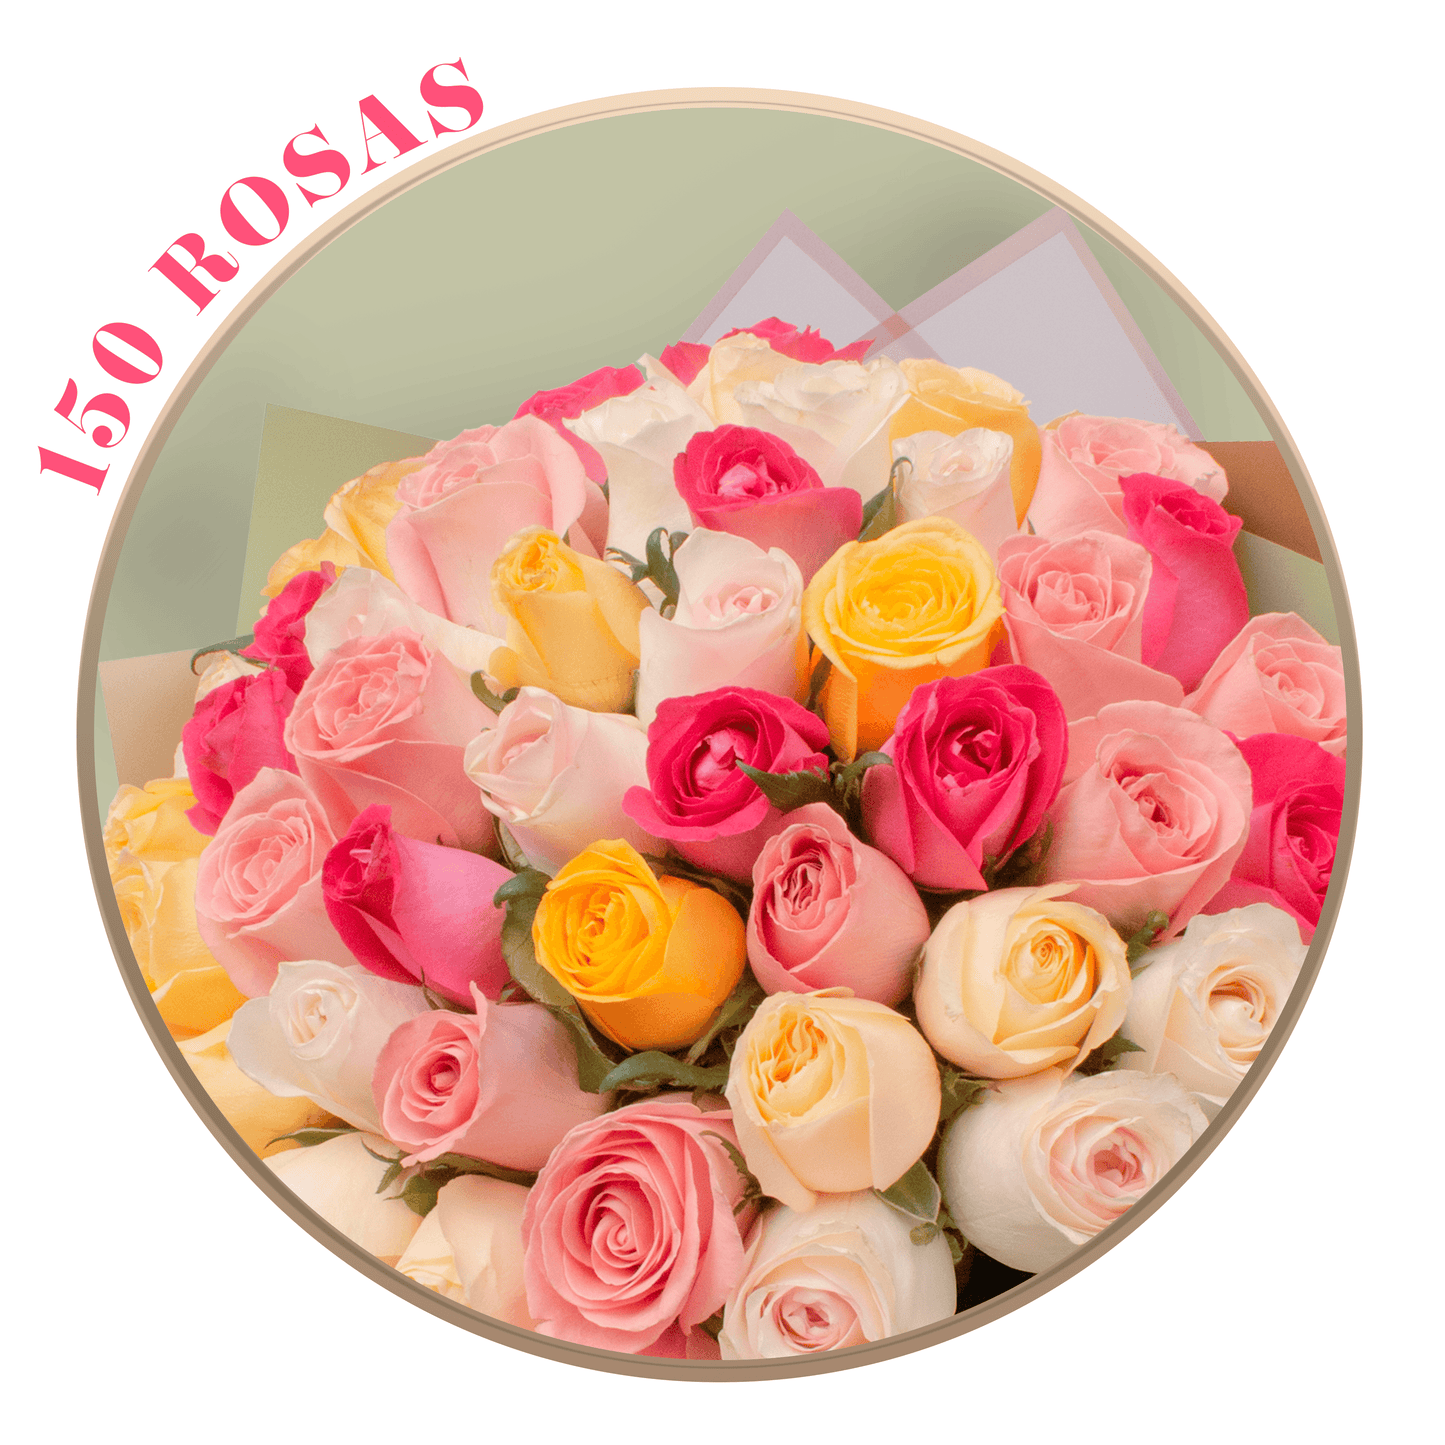 Ramo de Rosas Mixtas (Náutica, Fucsia Topaz, Amarilla, Peach Avalanche, Coral y Hermosa), presentación de 50, 100 o 150 rosas | Ramo de Flores para el 10 de Mayo